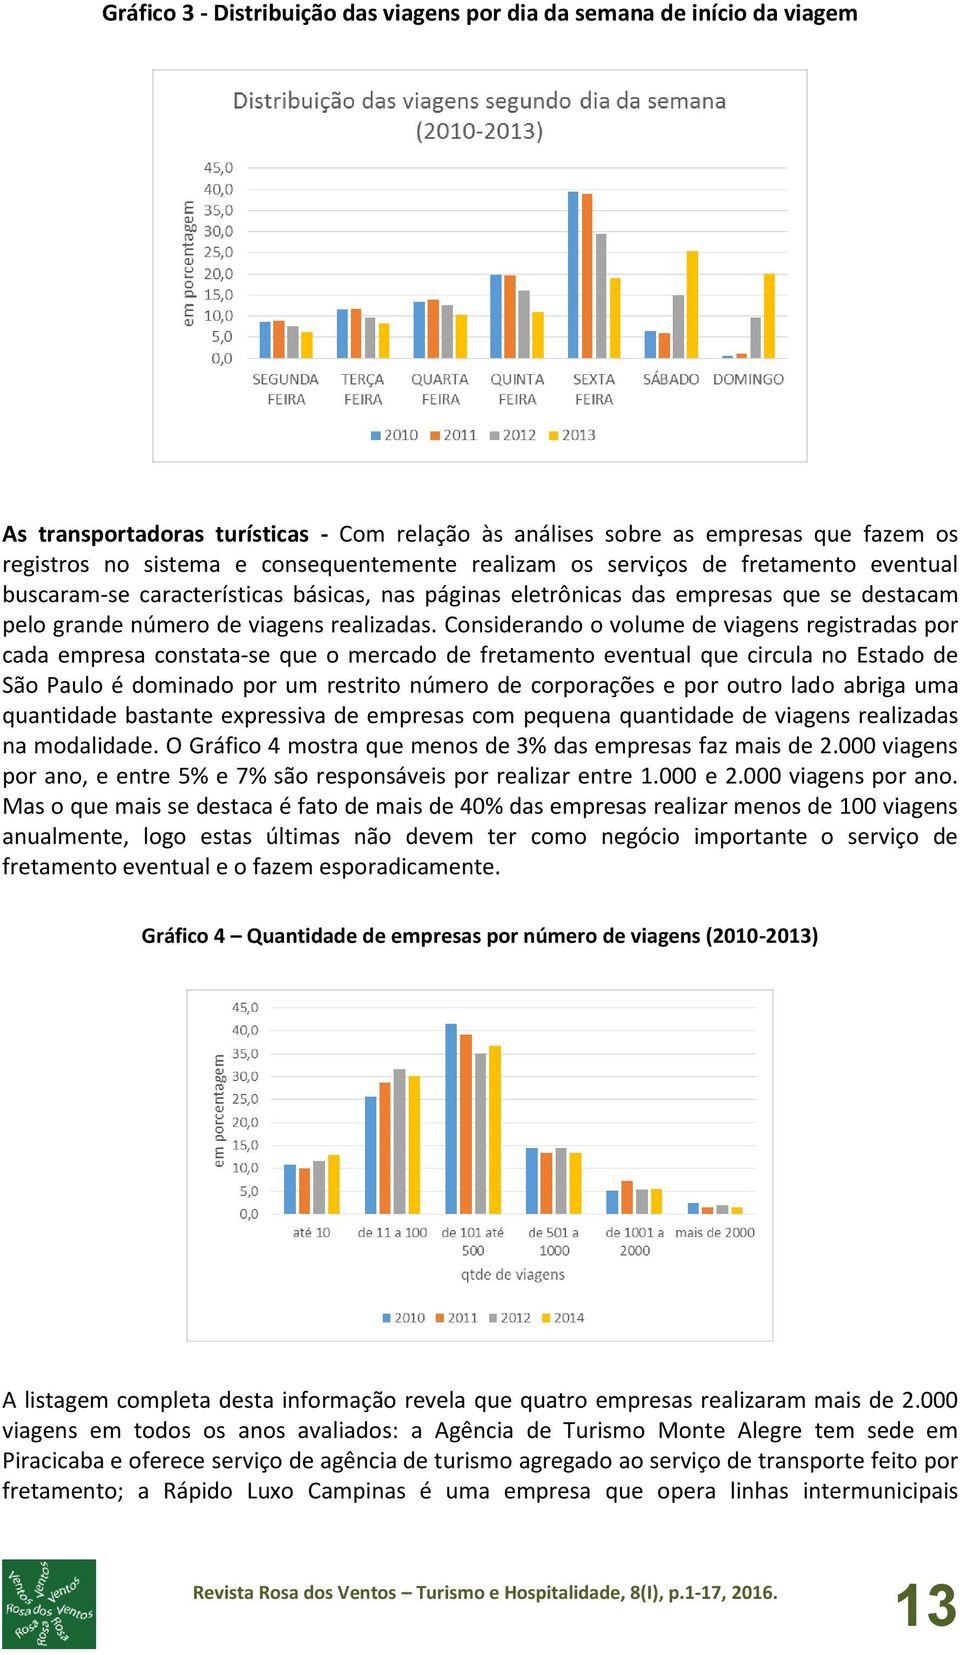 Considerando o volume de viagens registradas por cada empresa constata-se que o mercado de fretamento eventual que circula no Estado de São Paulo é dominado por um restrito número de corporações e